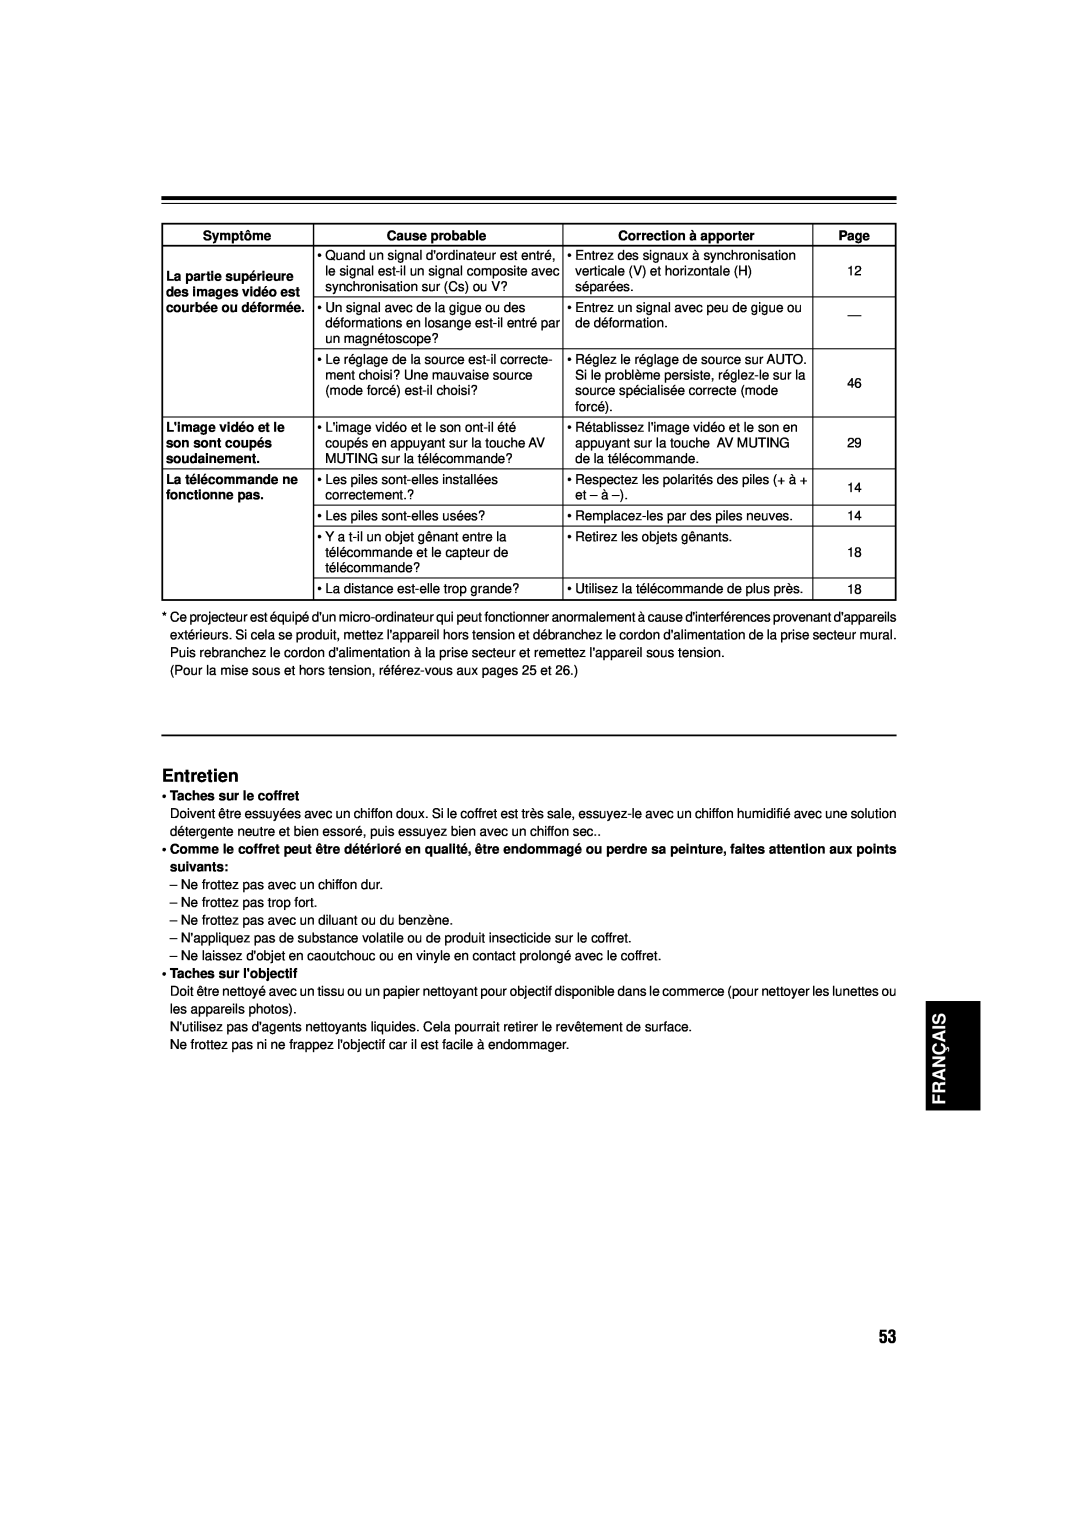 JVC DLA-M15U manual Entretien, Français, Symptôme, Cause probable, Correction à apporter, Page, La partie supérieure 